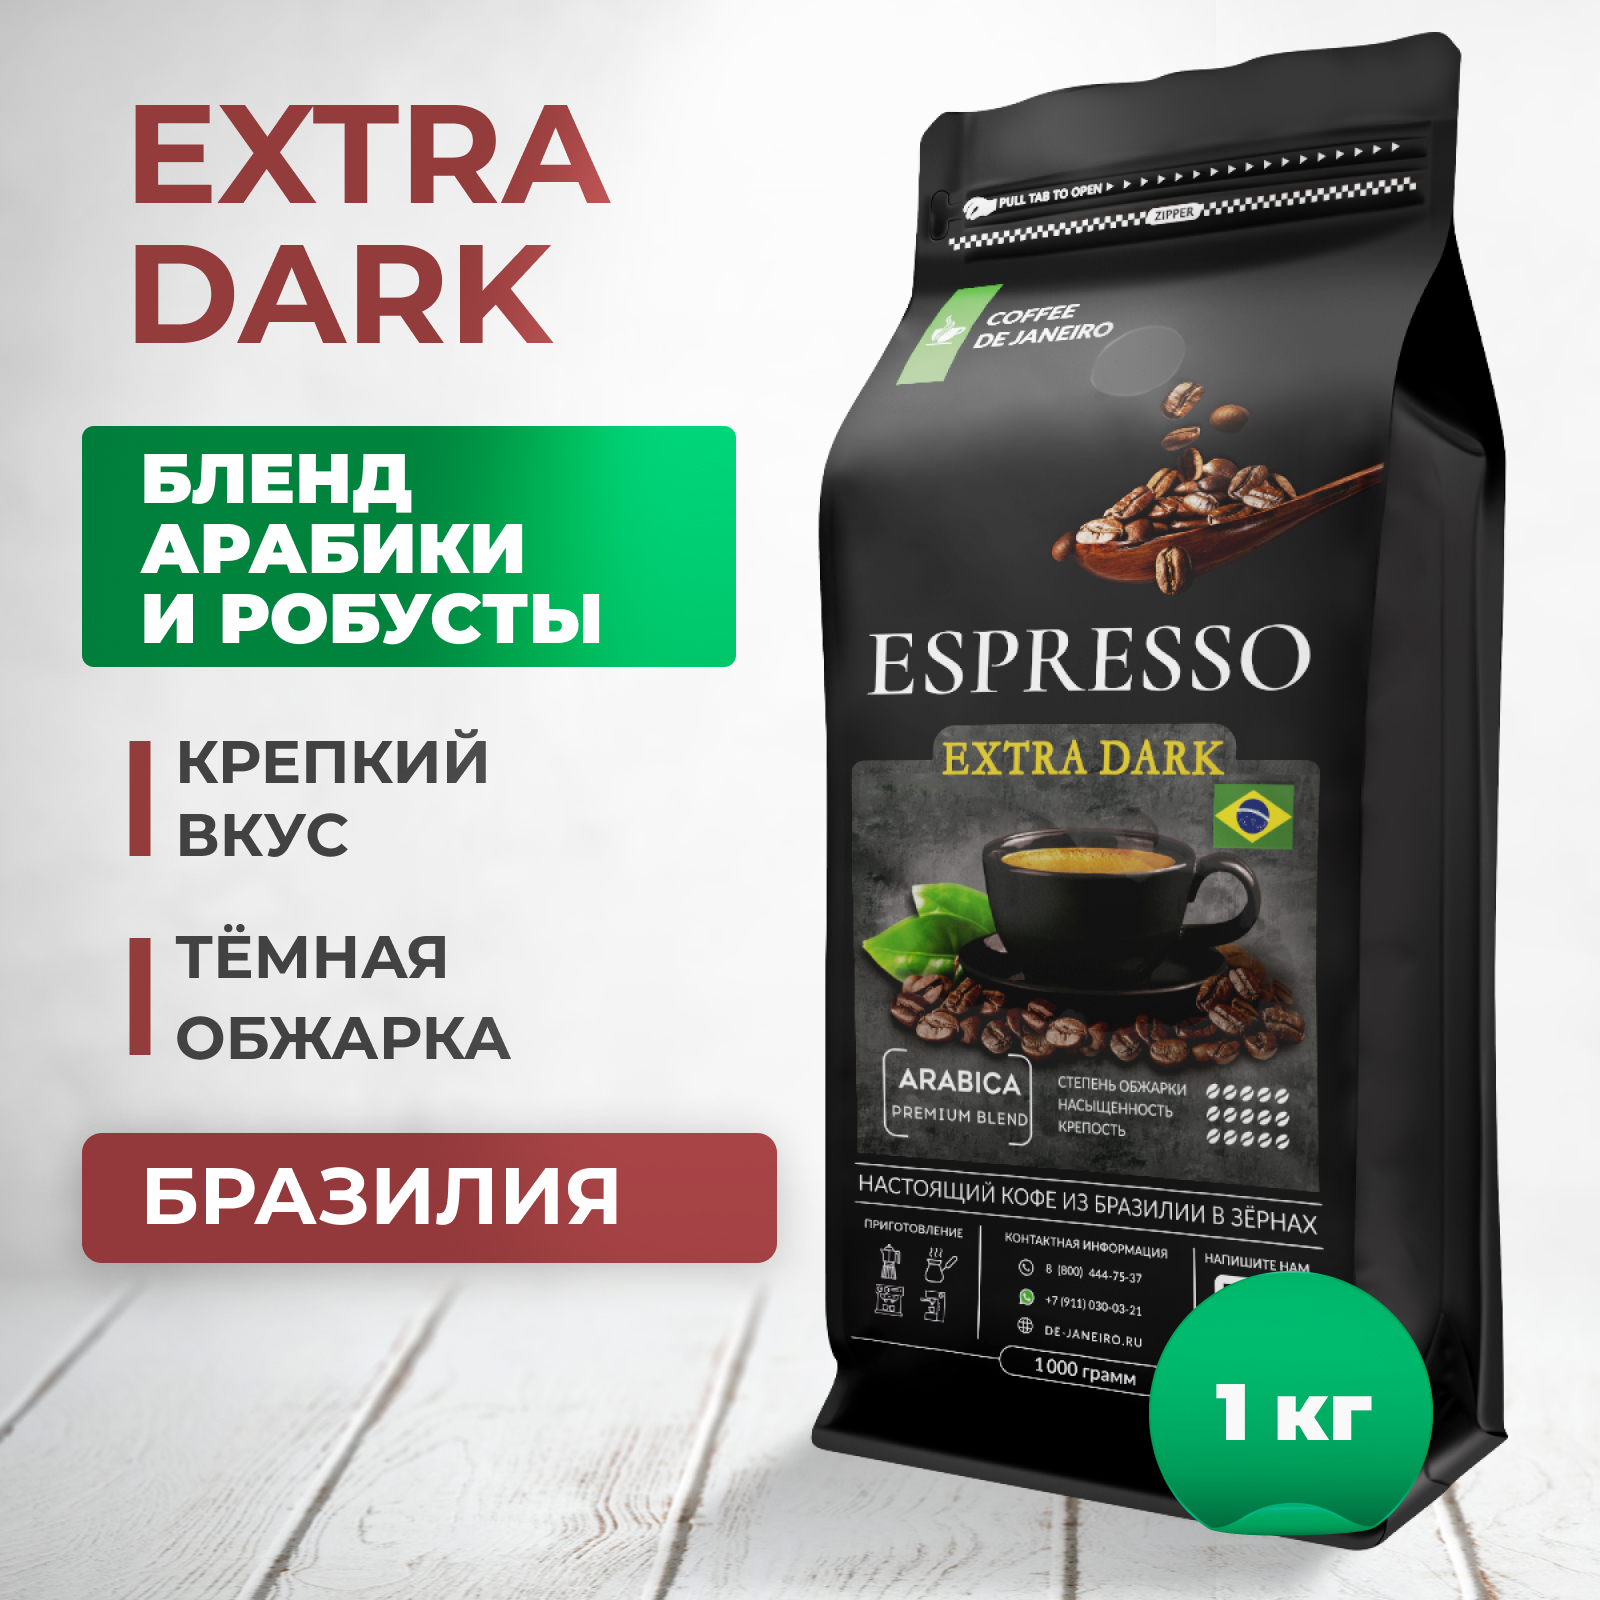 Купить бразильский кофе в зёрнах DE JANEIRO ESPRESSO EXTRA DARK для кофемашины, 1 кг, цены на Мегамаркет | Артикул: 600007639813